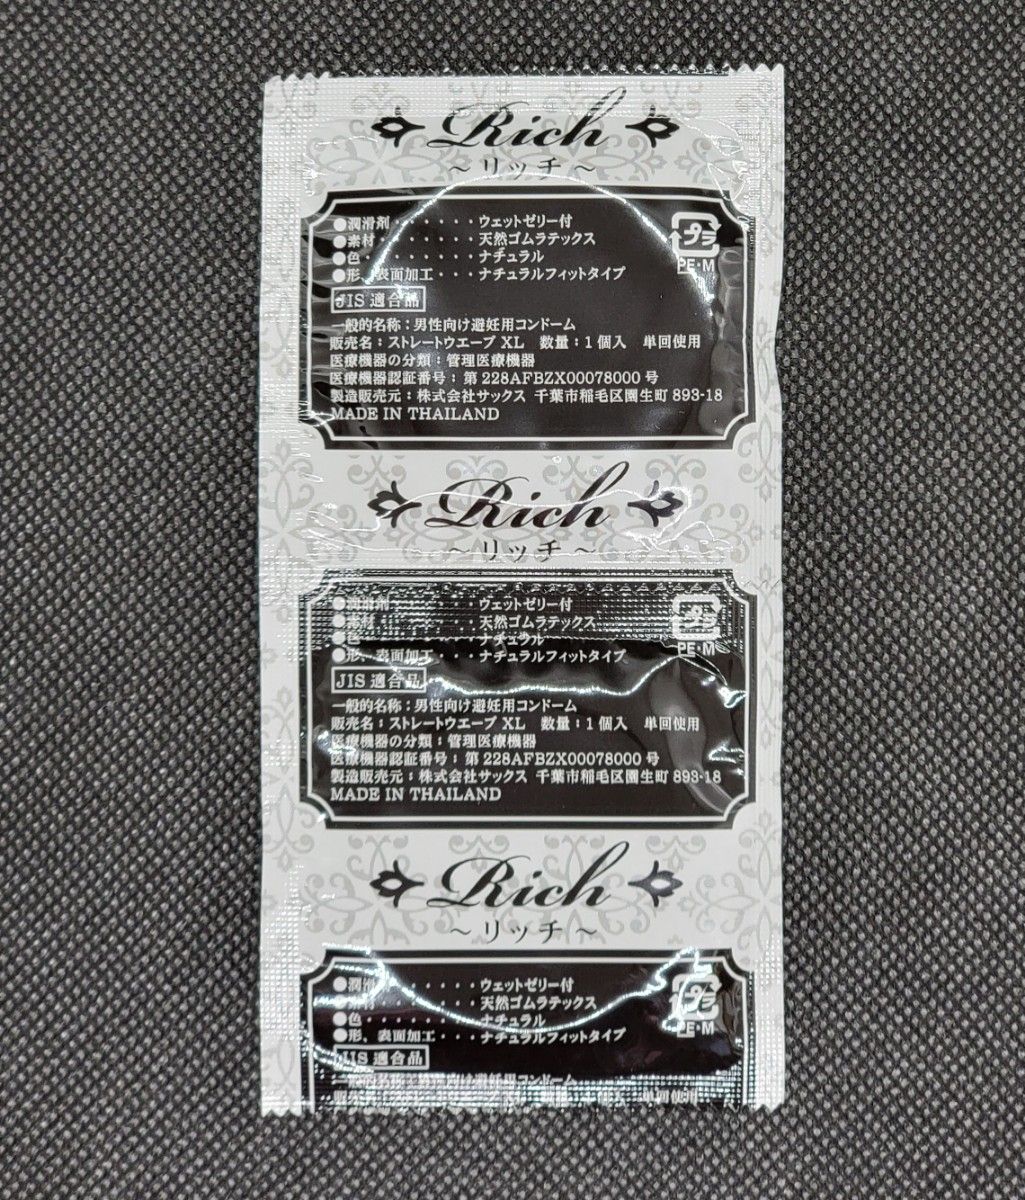  業務用コンドーム サックス Rich(リッチ) XL(LL)サイズ 144個 ジャパンメディカル スキン 避妊具